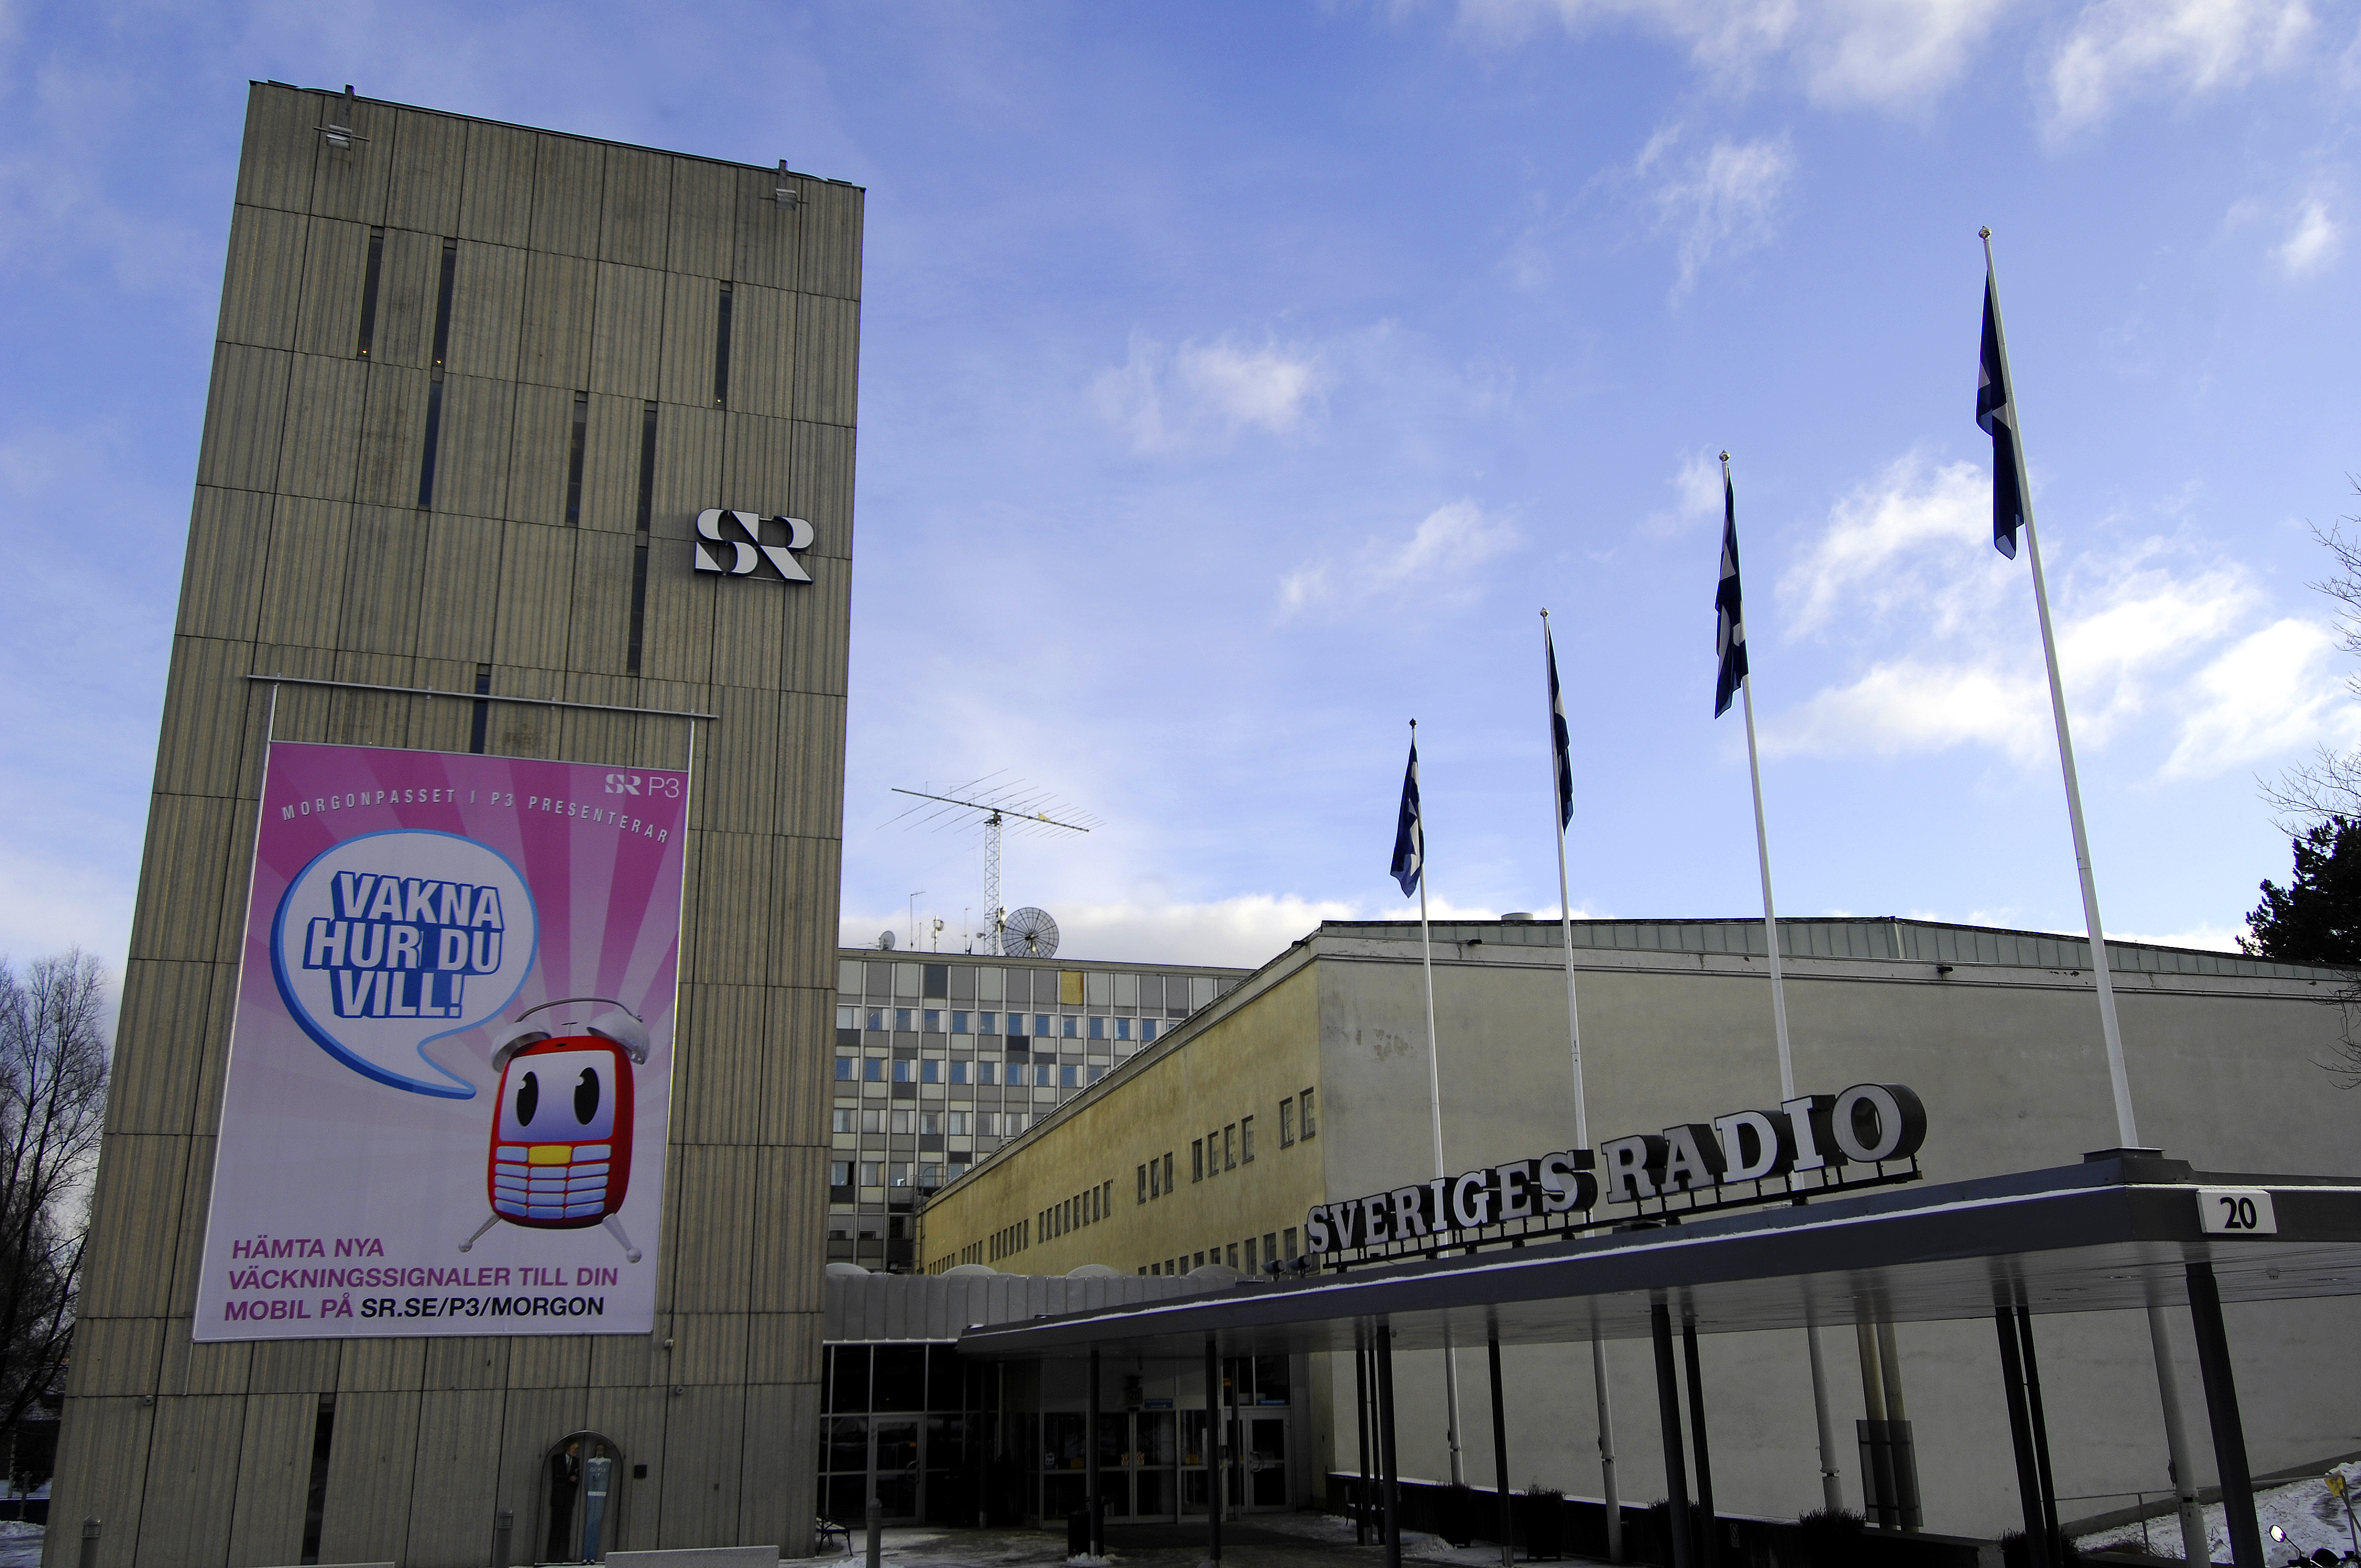 Nyheter24, Varumärke, Sommar, Sveriges Radio